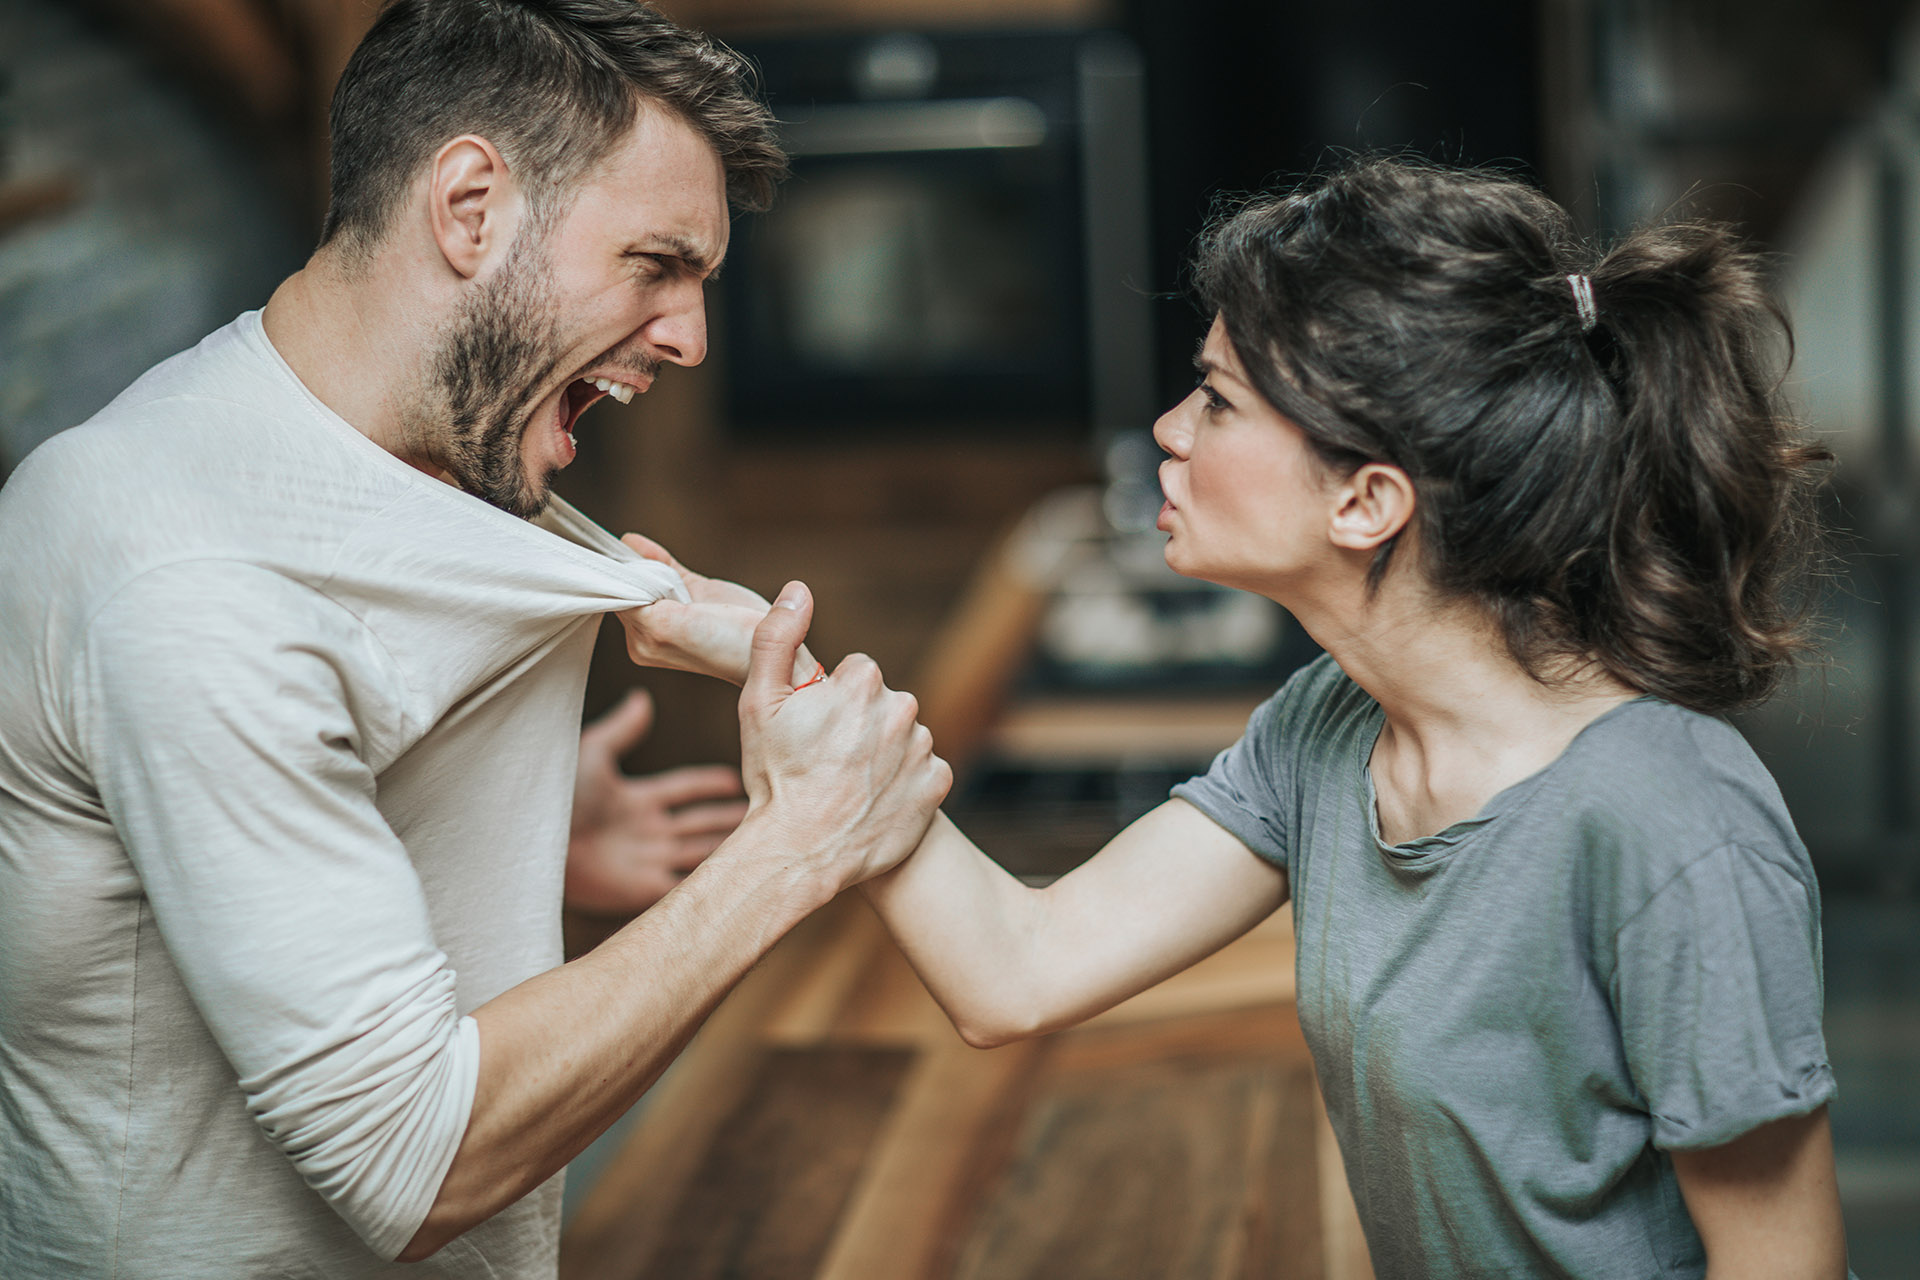 Las mujeres y hombres rencorosos se molestan con la manera comportarse del otro
(Getty Images)